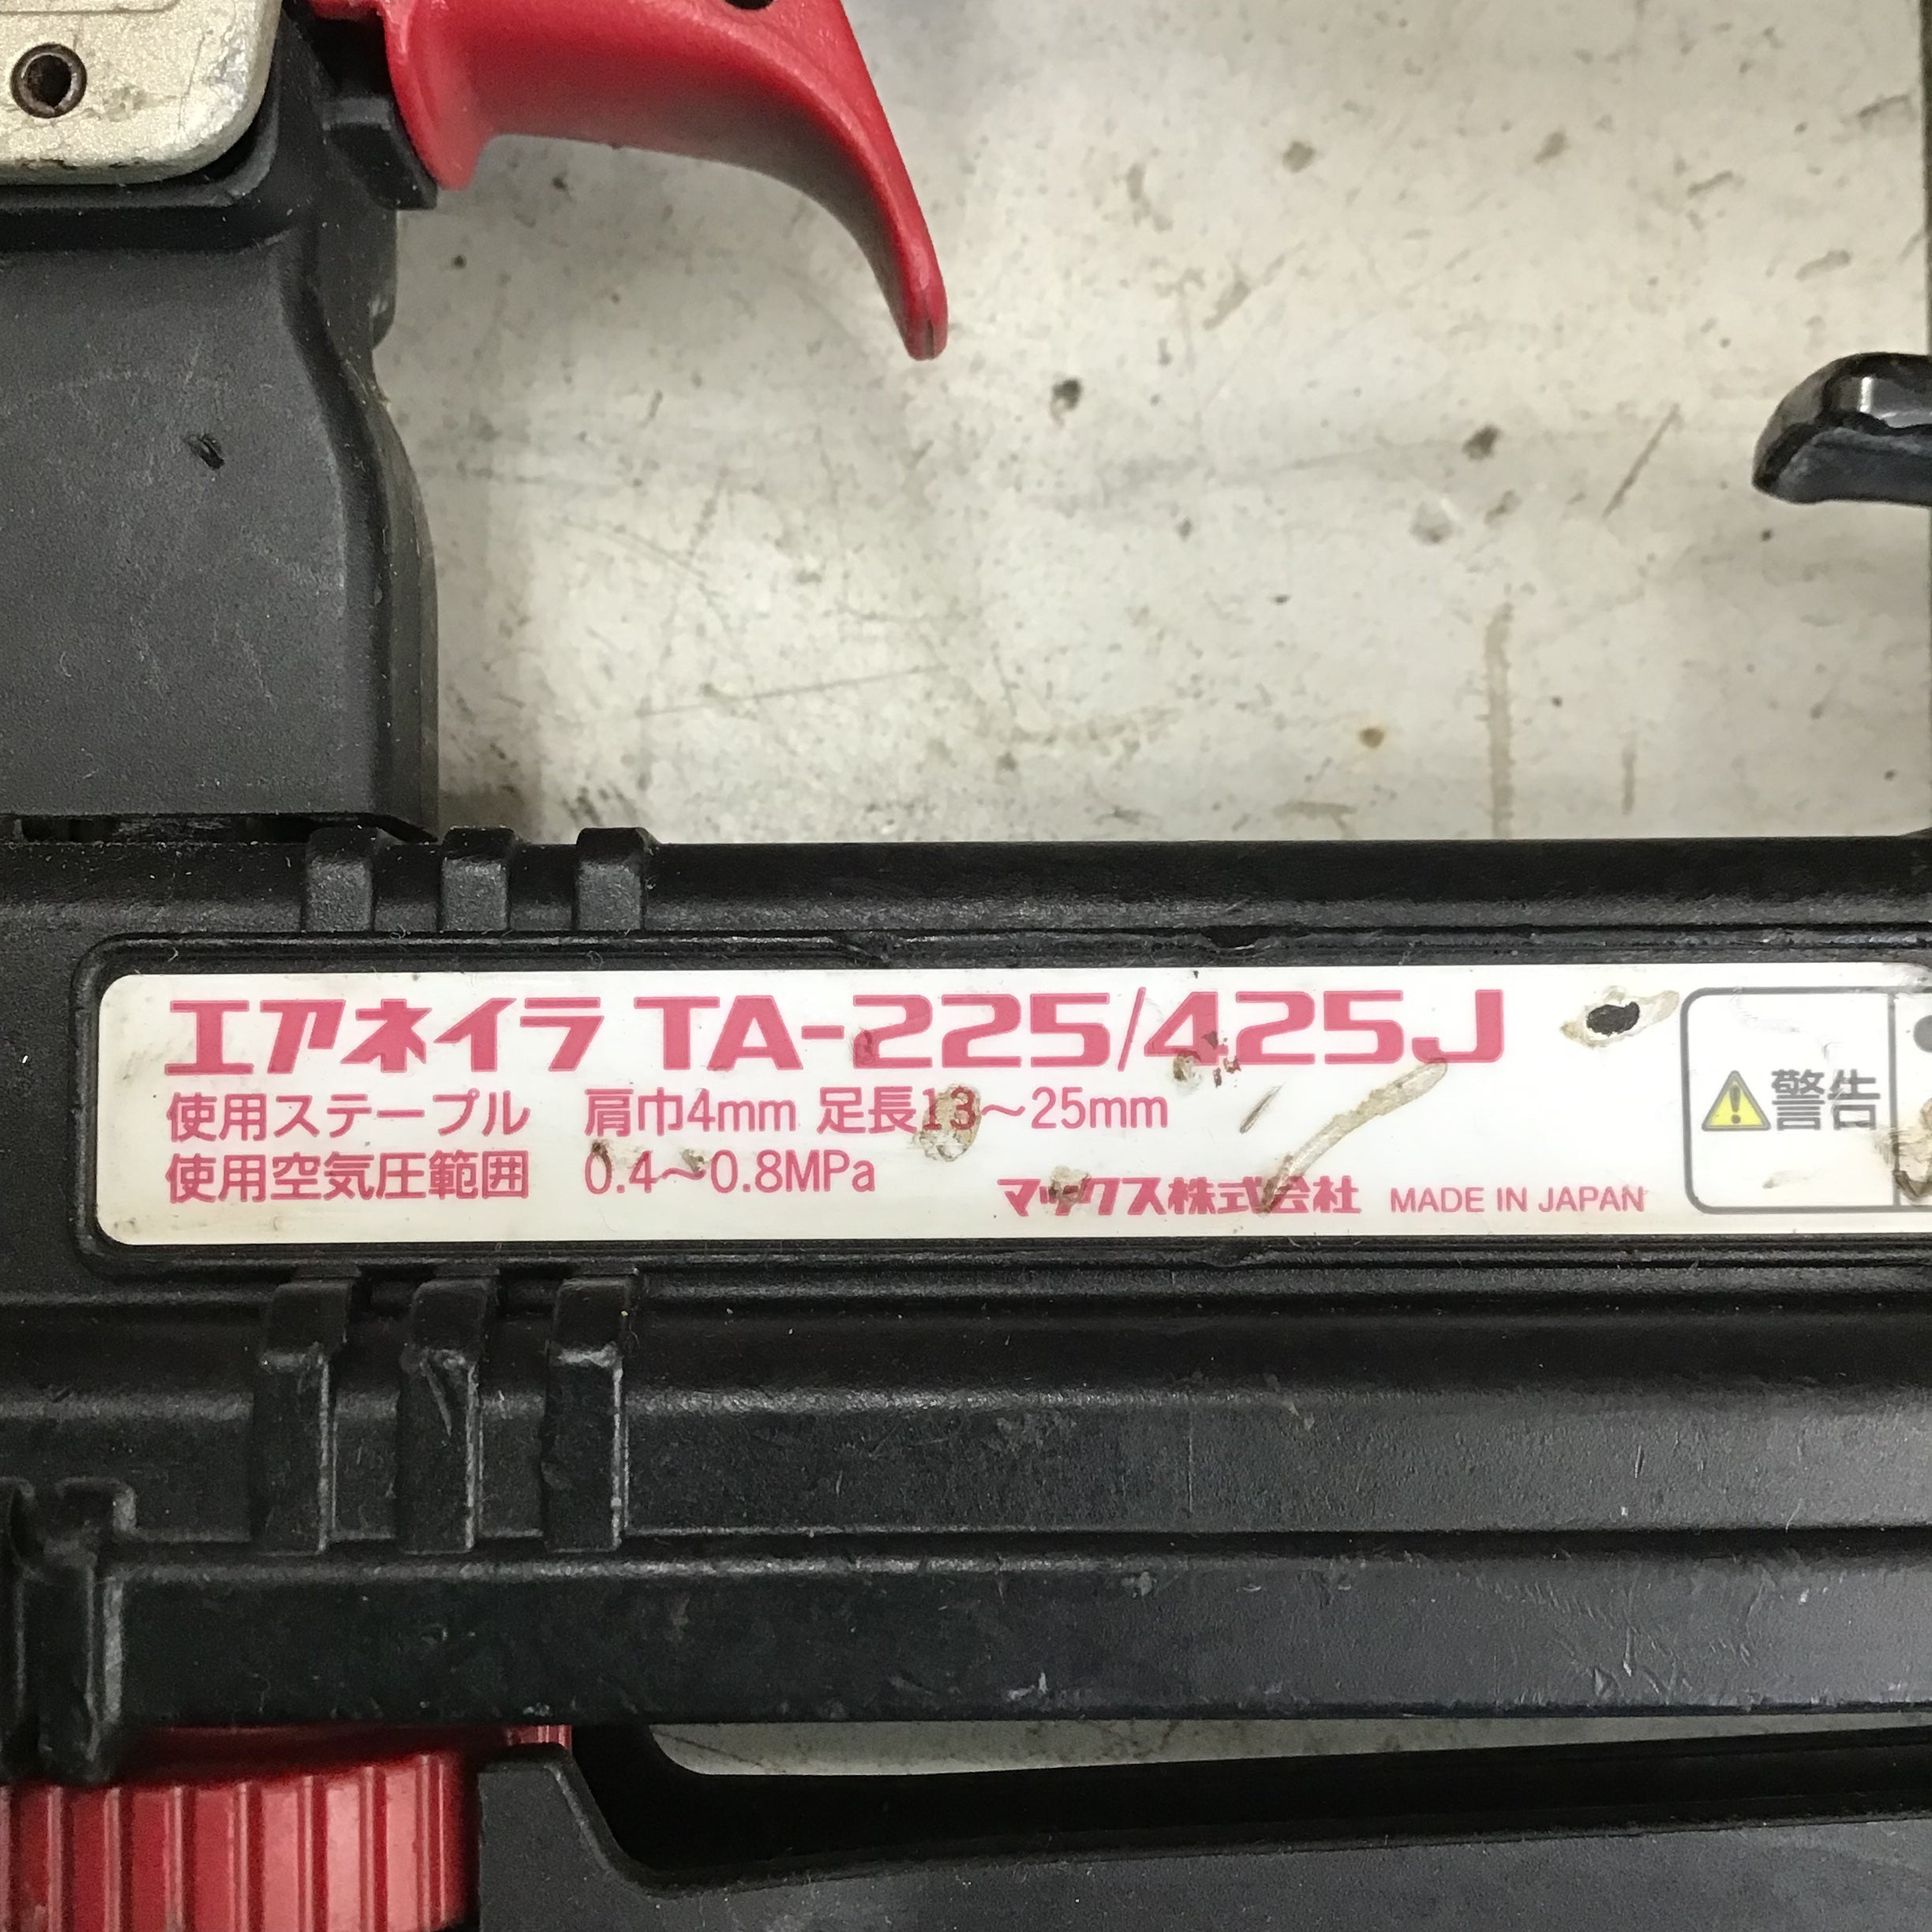 マックス 常圧ステープル用エアネイラ TA-225/425J-